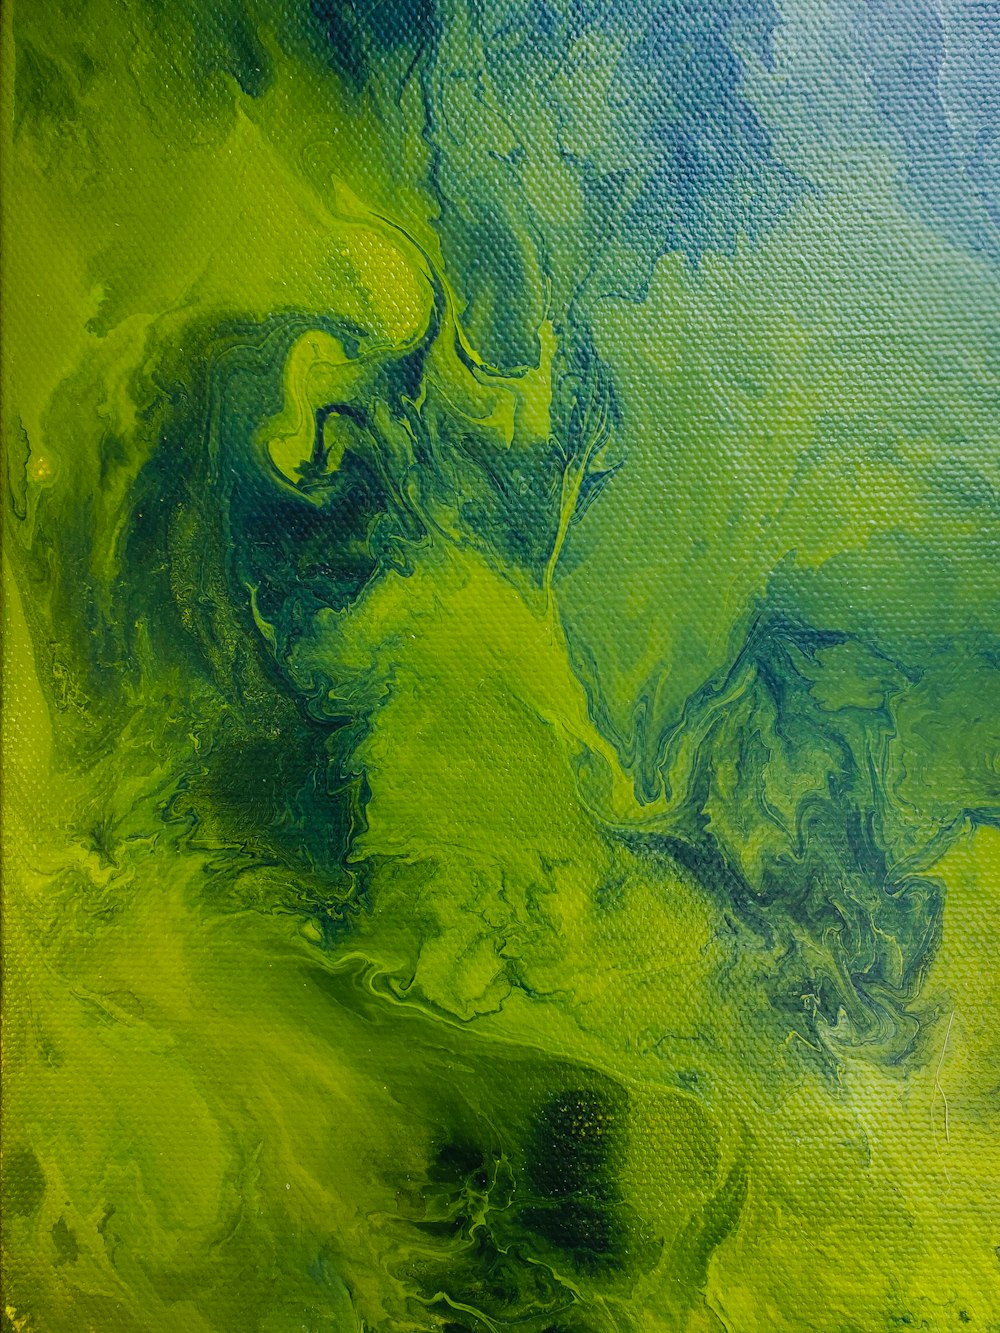 Pittura astratta gialla blu e verde